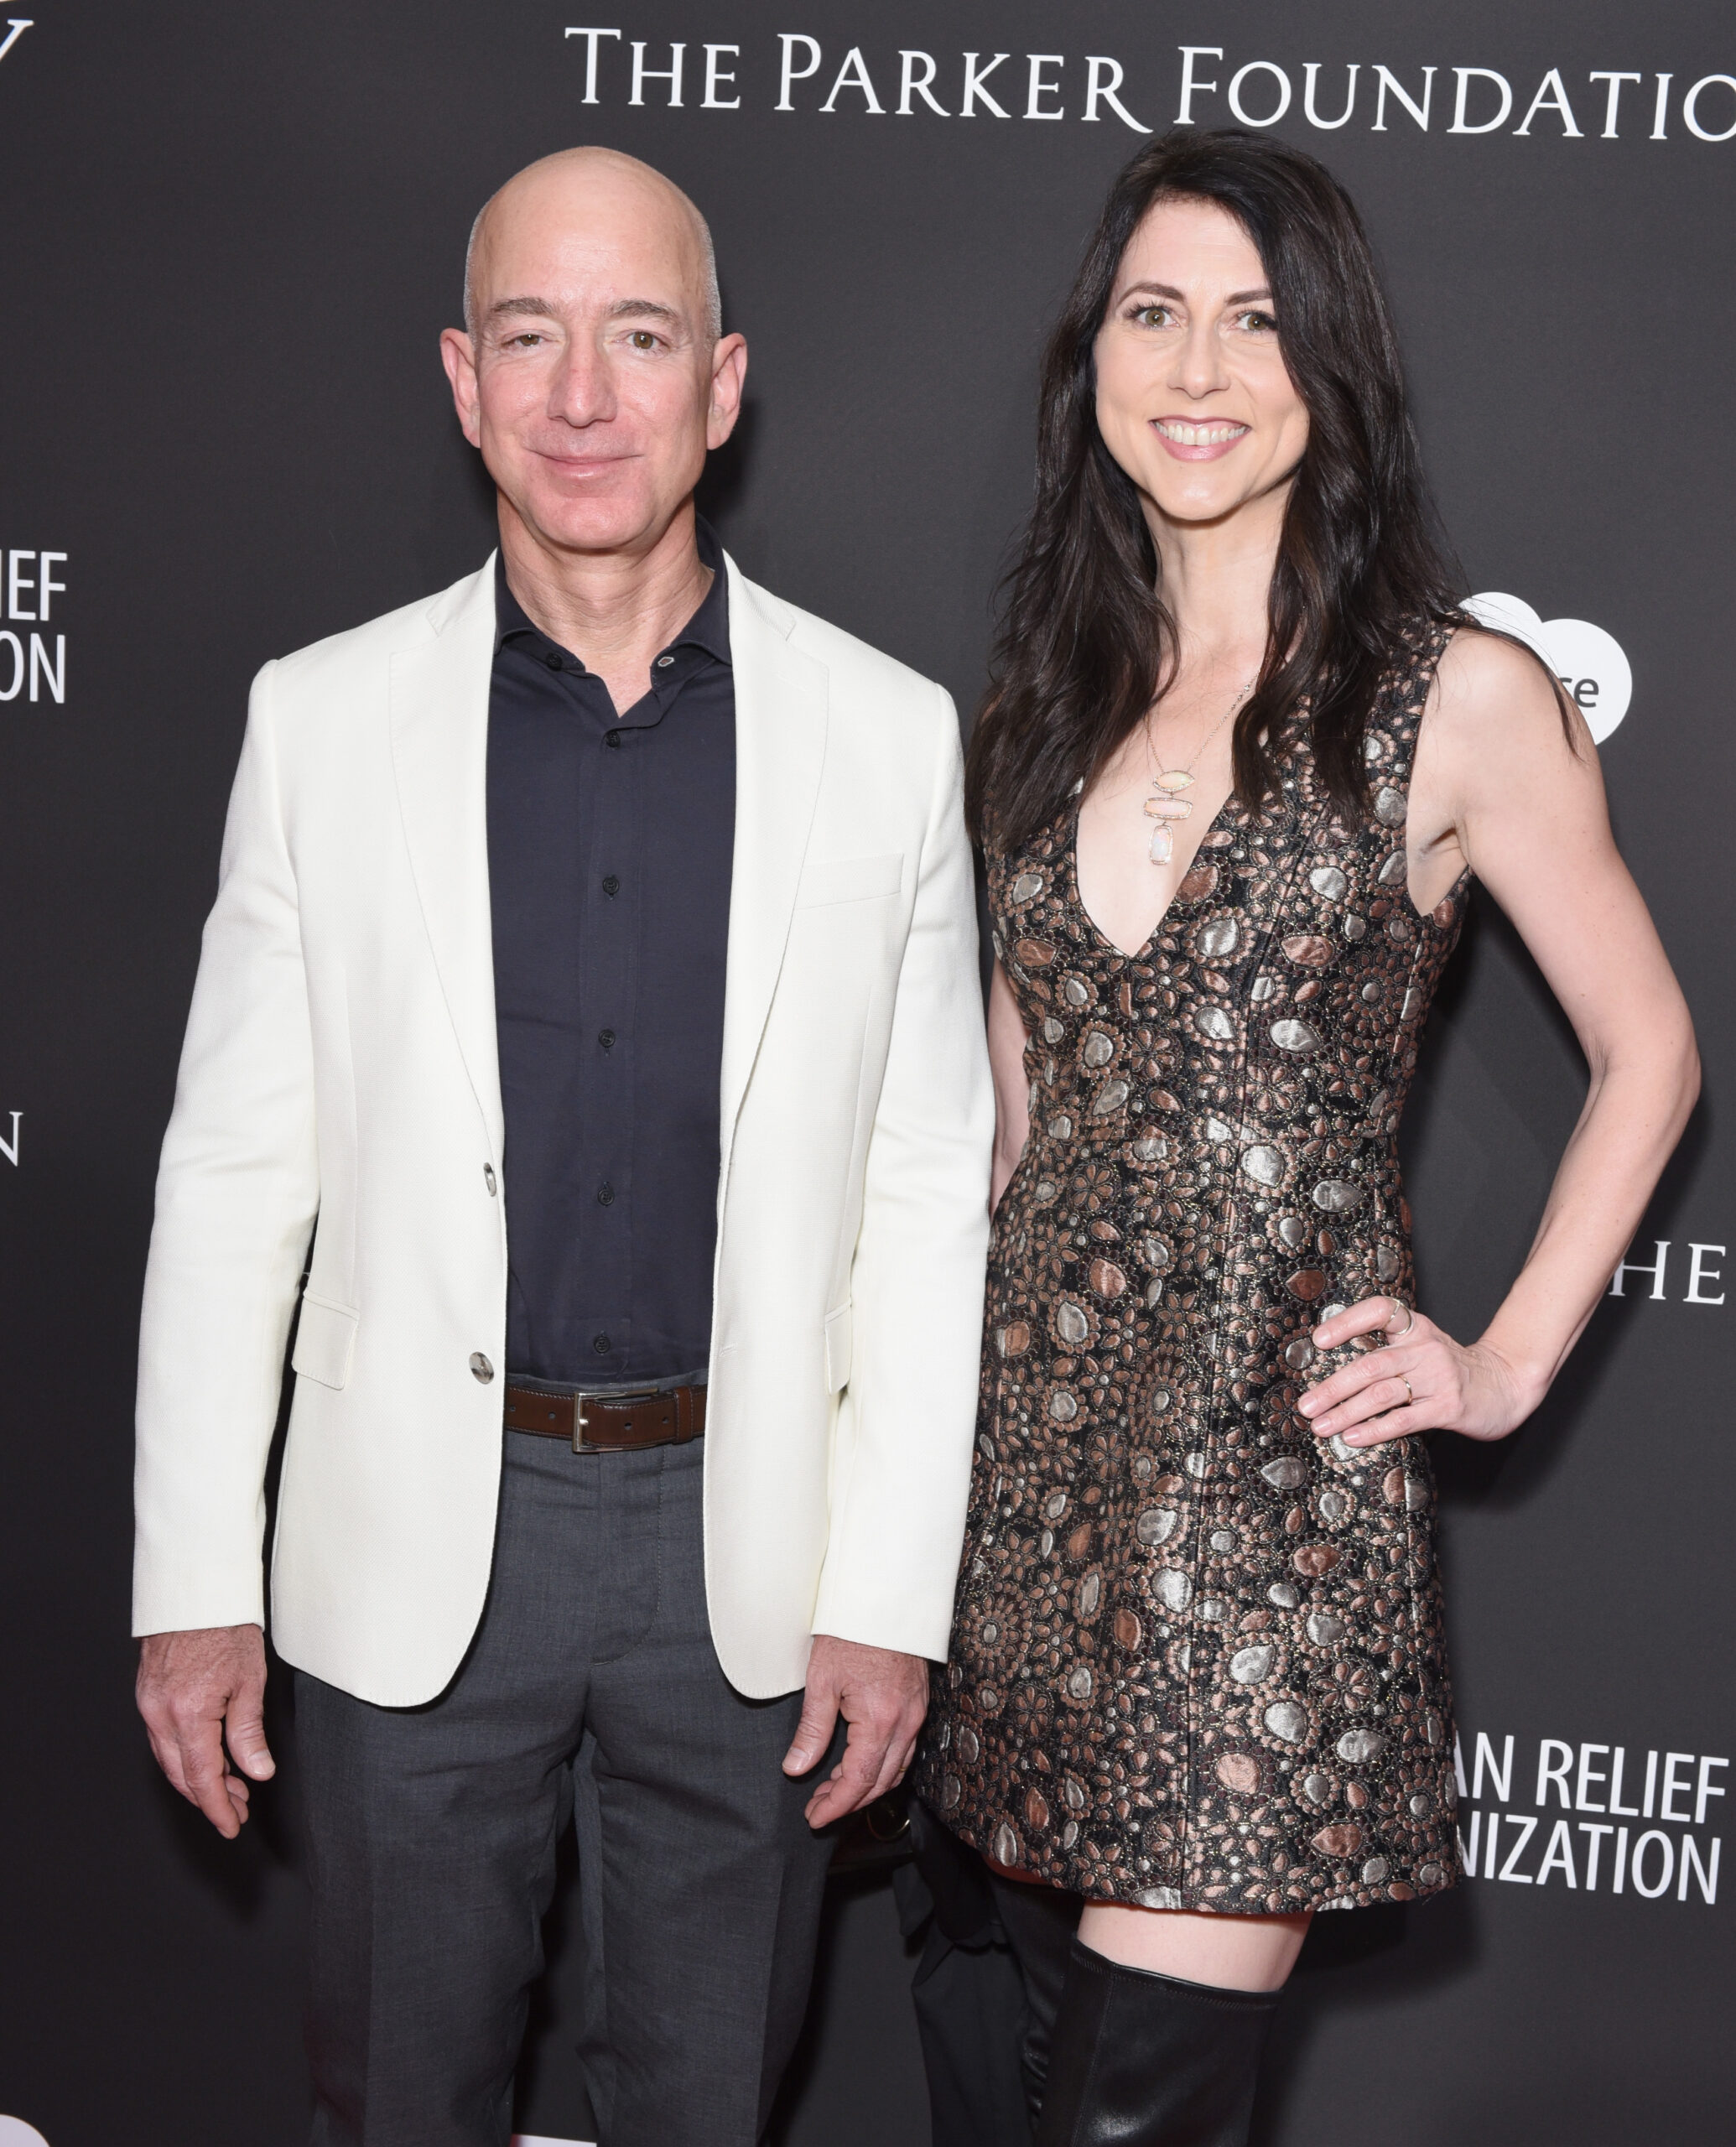 La ex esposa de Jeff Bezos sacude al mundo de la filantropía